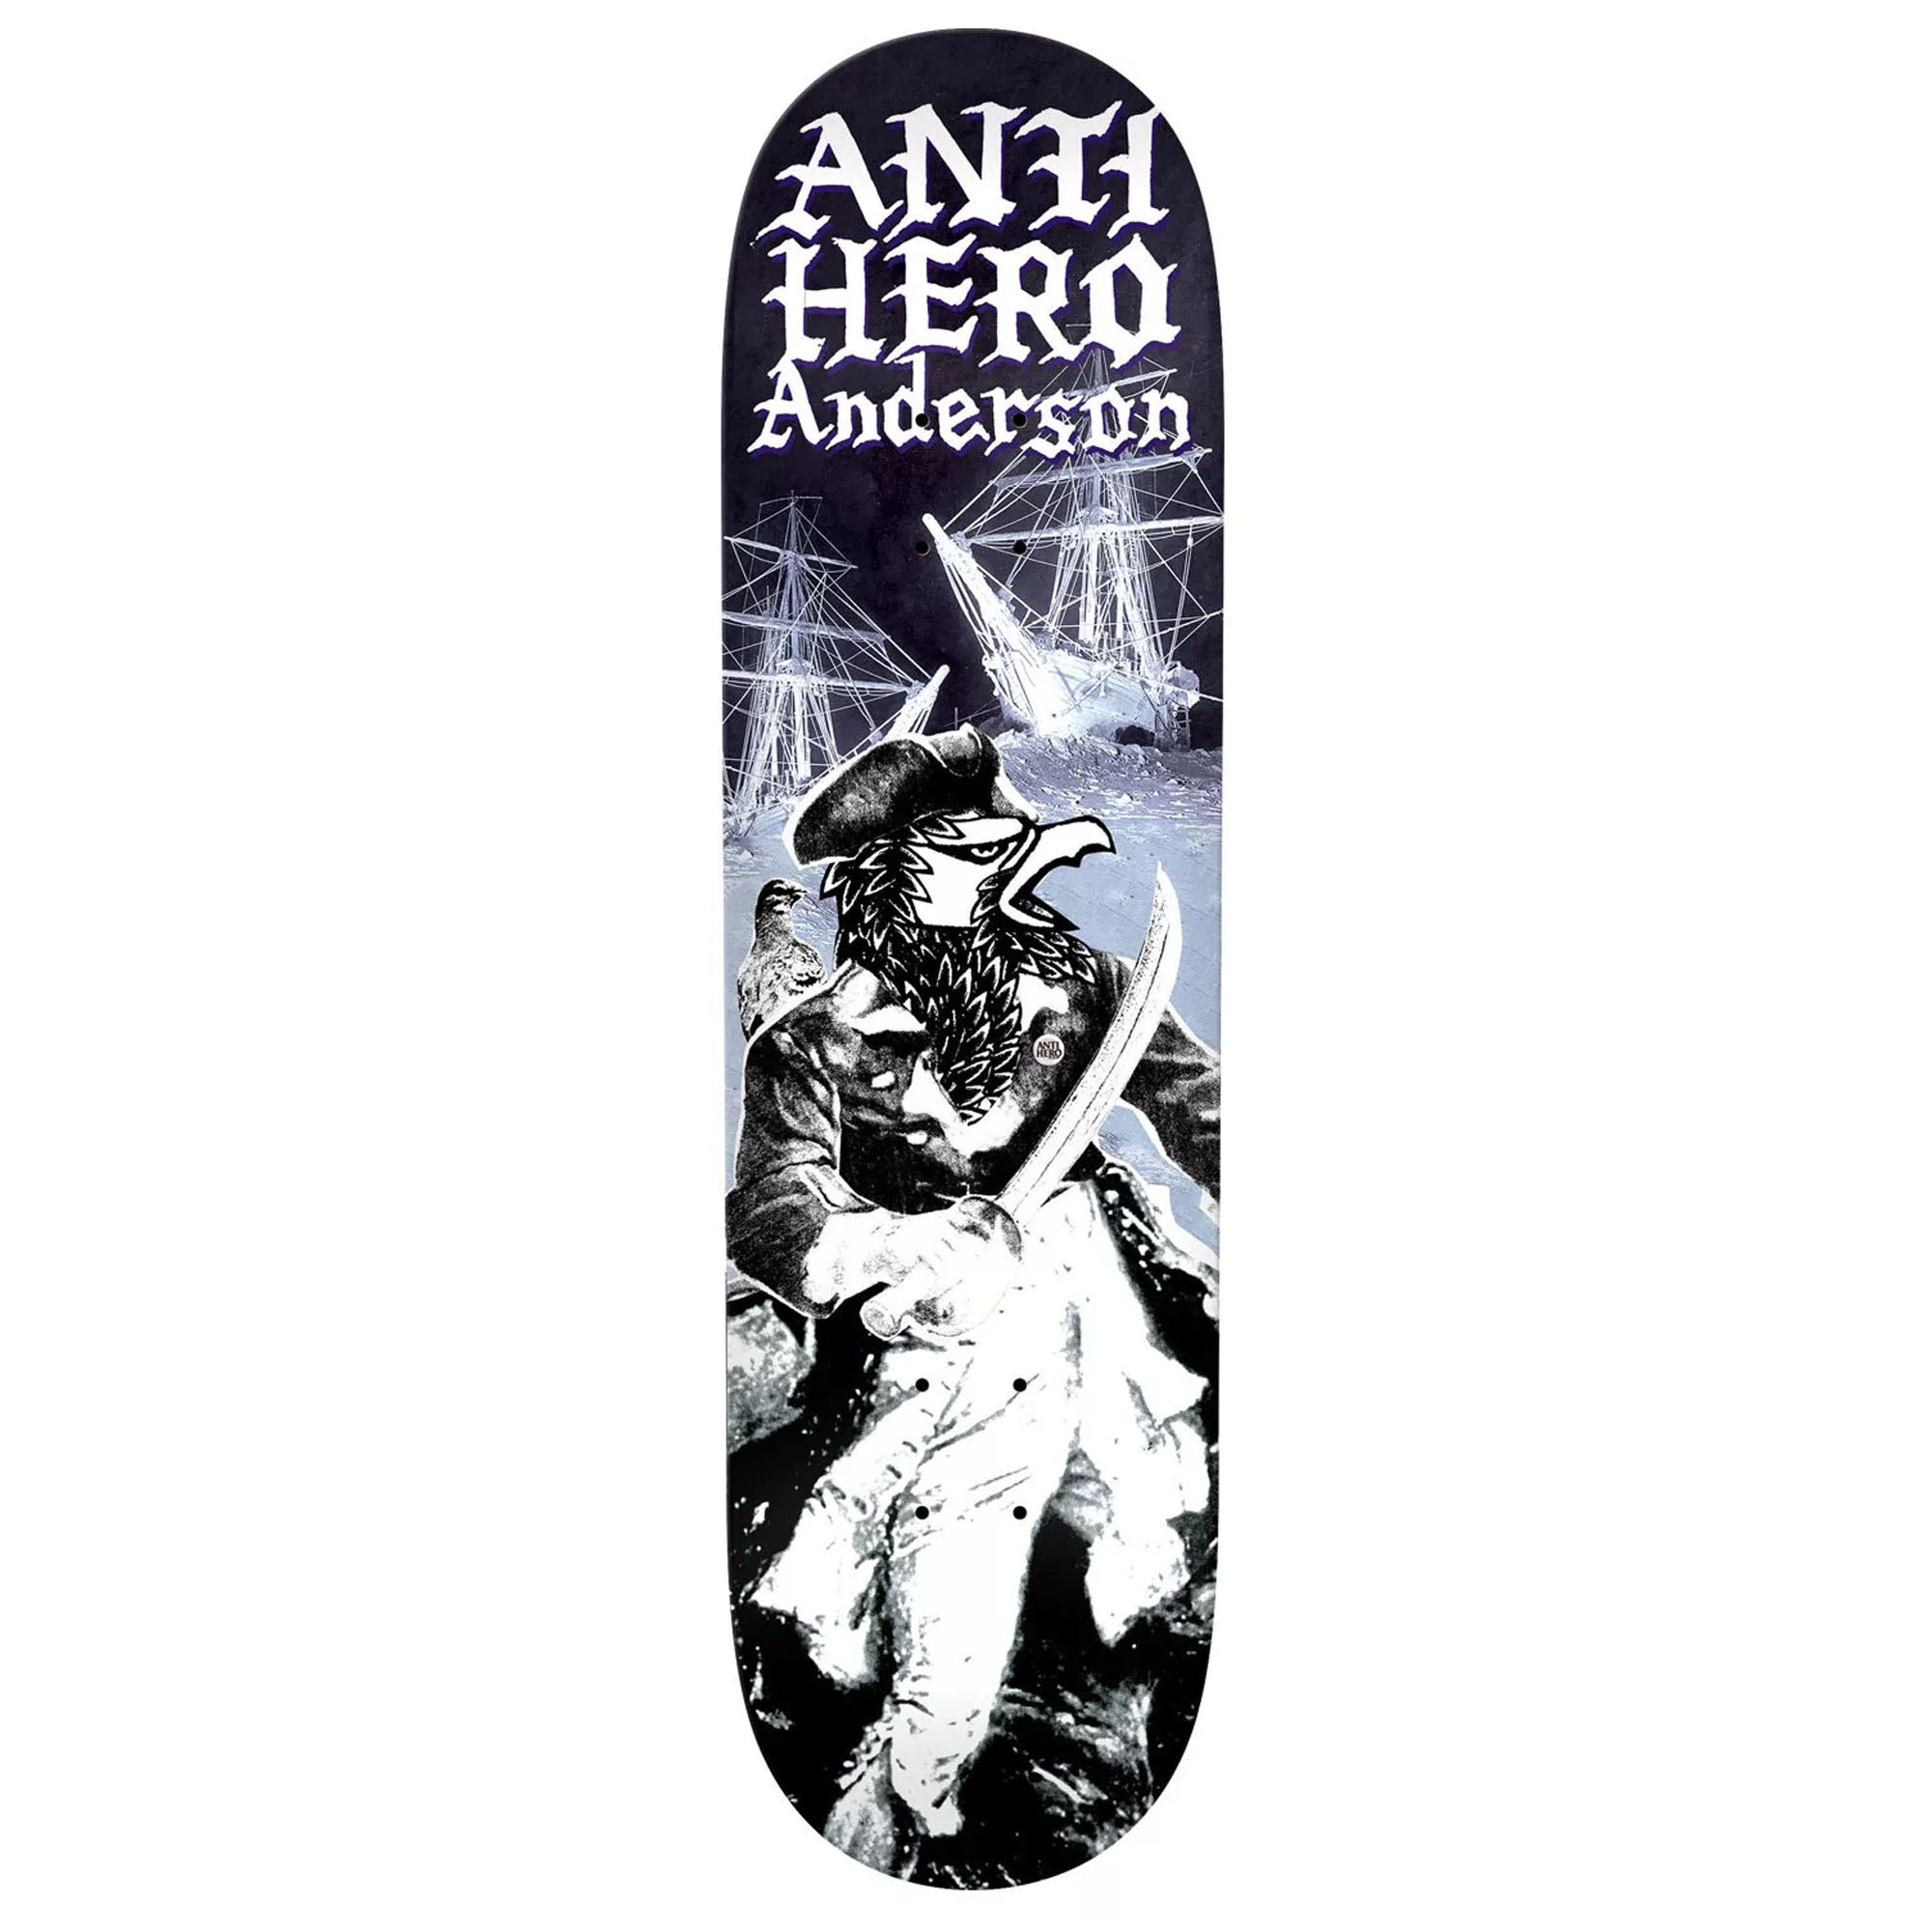 Anti Hero Anderson Wild Unkown Round 2 8.5" Skateboard Deck